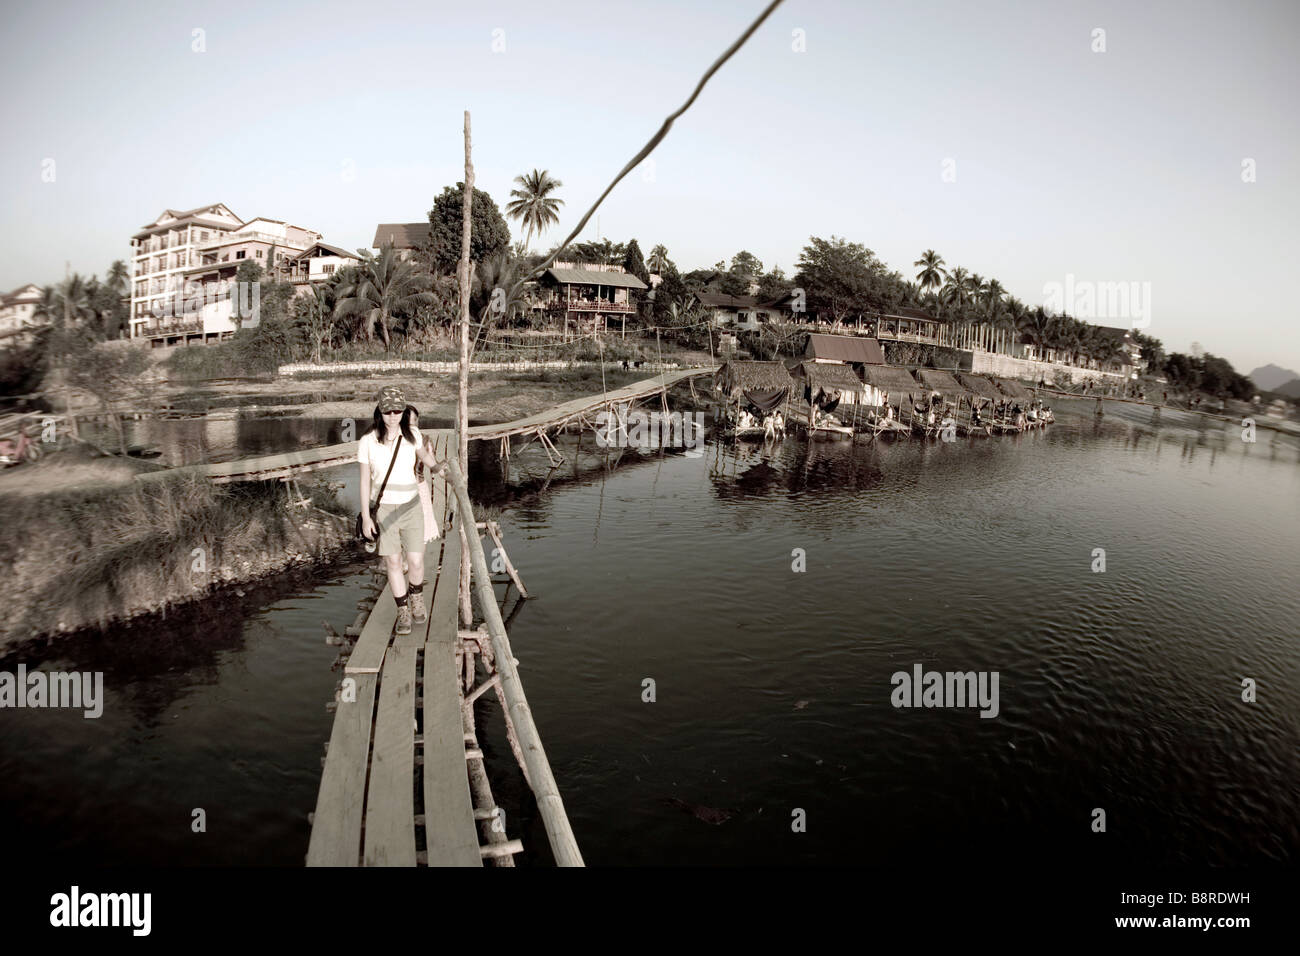 Laos, Vientiane Province, Vang Vieng, Nam Song River, bridges, woman, tourists, huts. Stock Photo